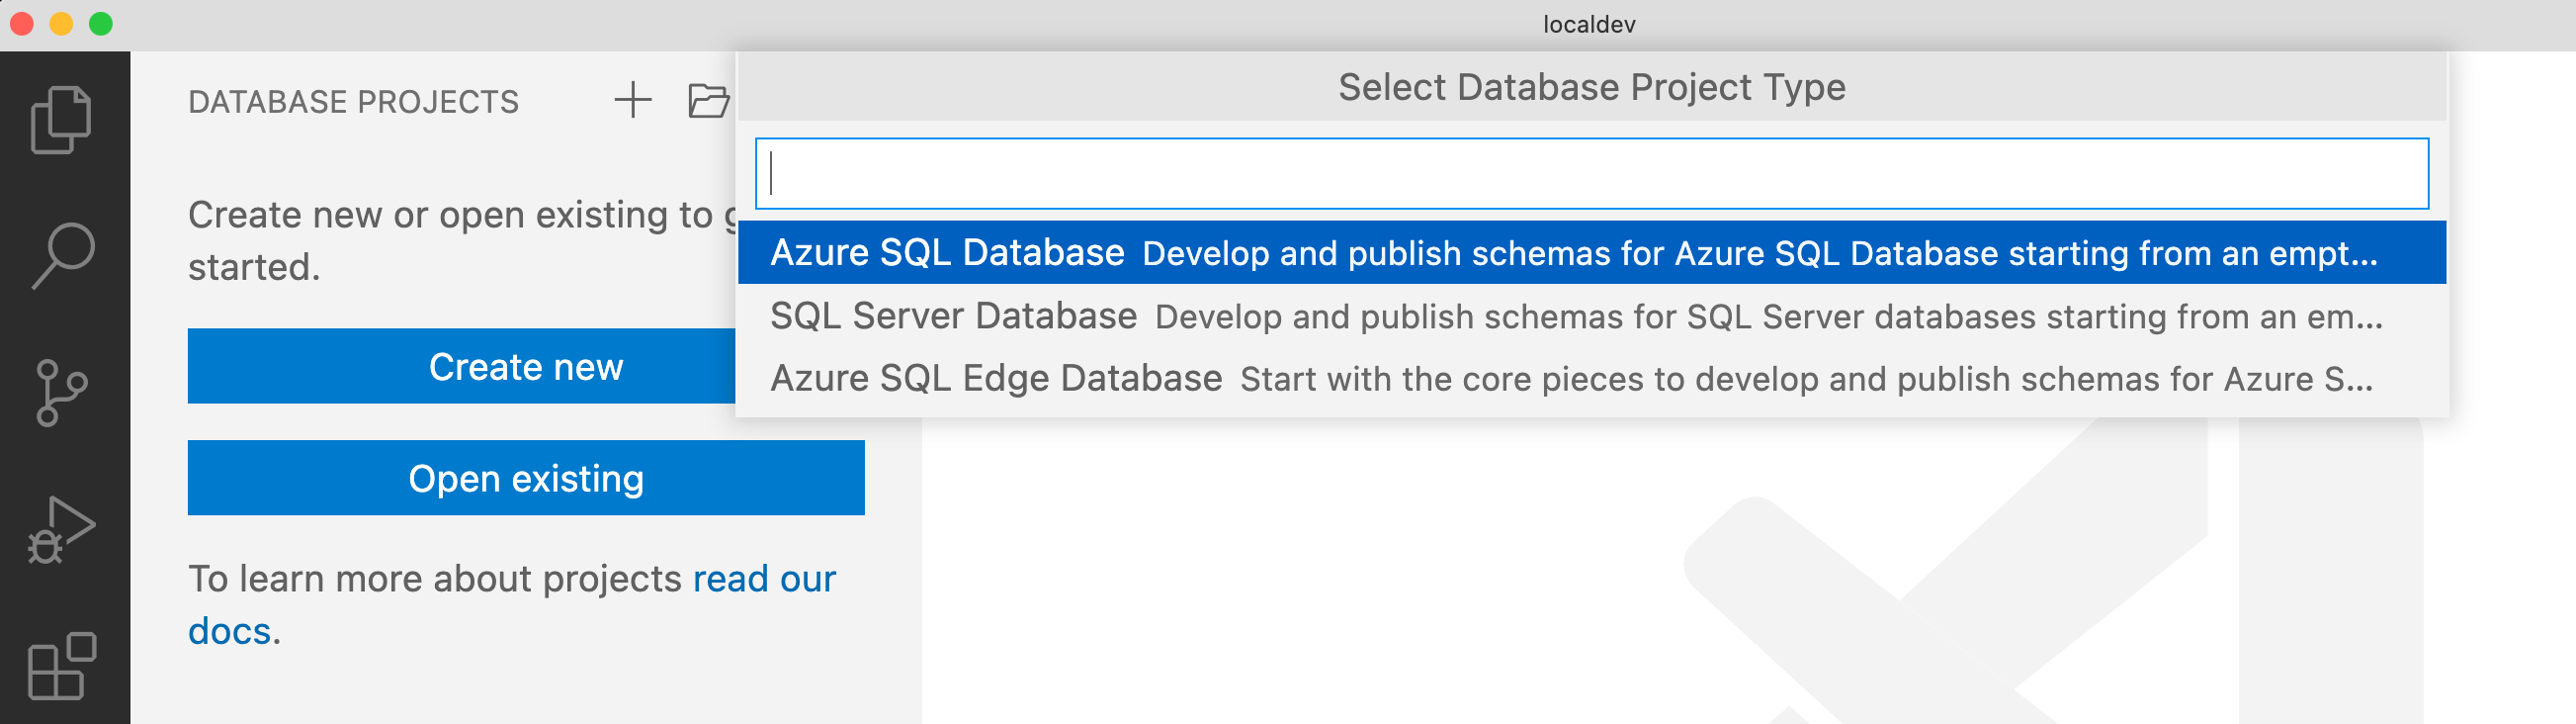 Screenshot della selezione del tipo di progetto per un progetto di database in Visual Studio Code.